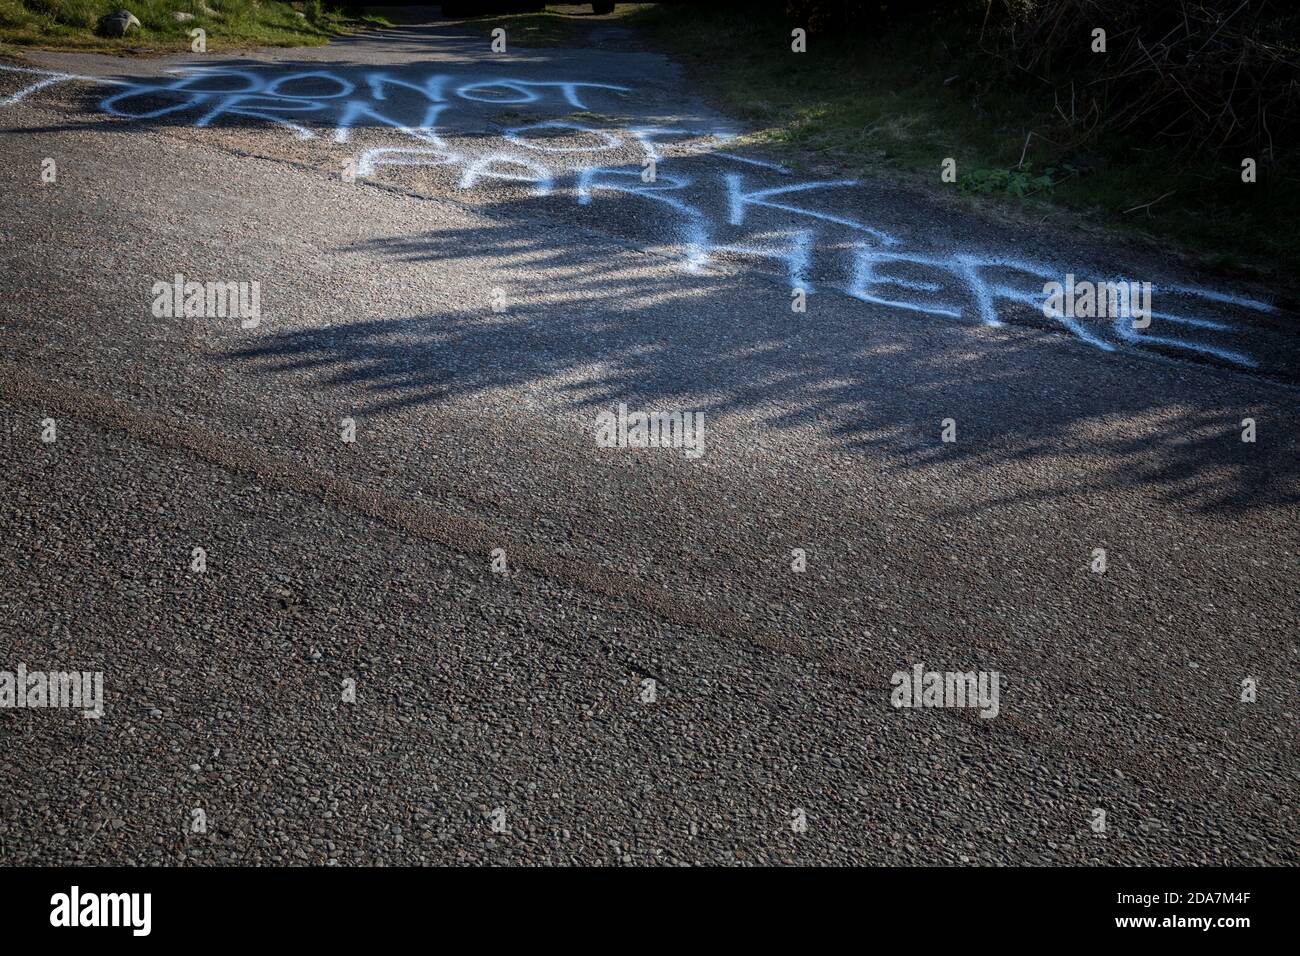 Mensaje pintado en la superficie de la carretera insistiendo 'no trun o parque aquí', Escocia. Foto de stock